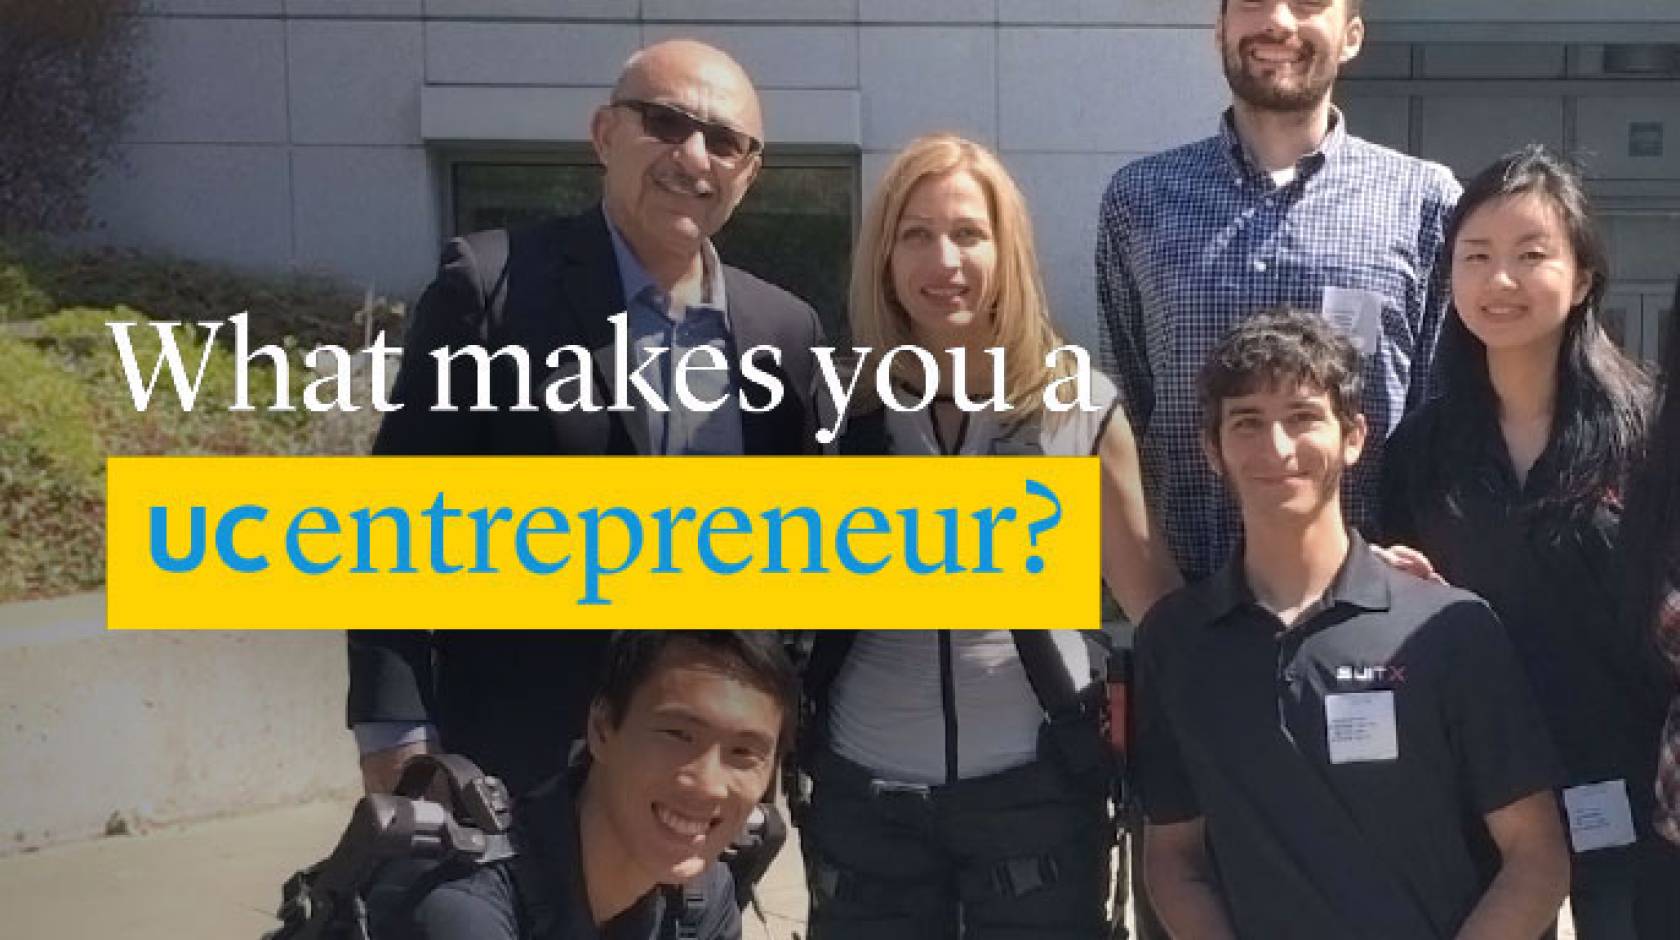 UC alumni entrepreneur contest